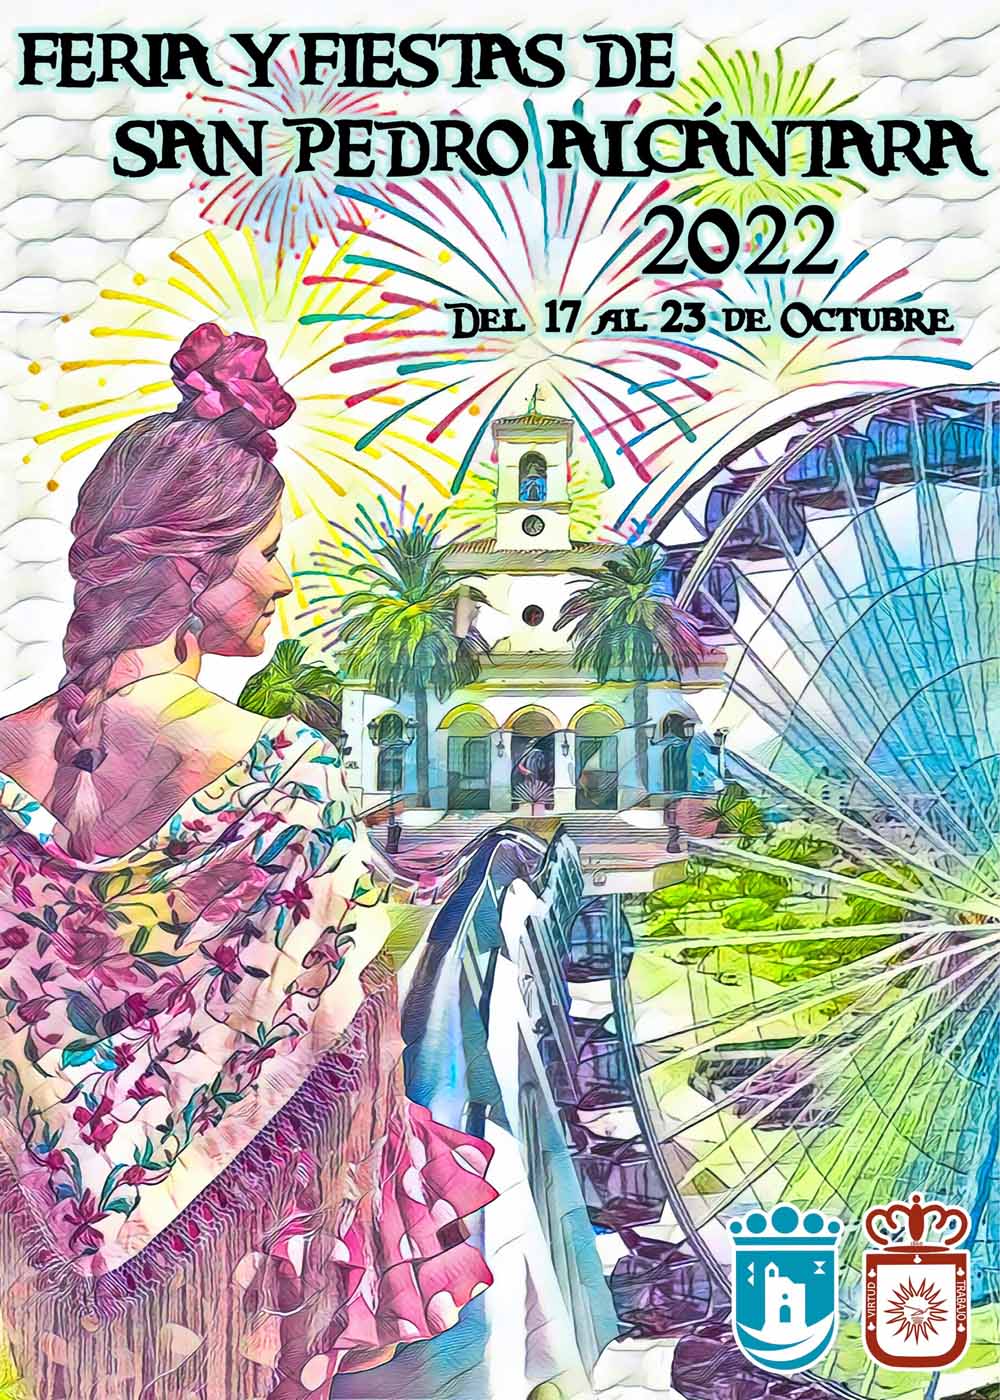 Un cartel de Antonio José Verano anunciará la Feria de San Pedro 2022, que se celebrará del 17 al 23 de octubre en el nuevo recinto permanente de La Caridad